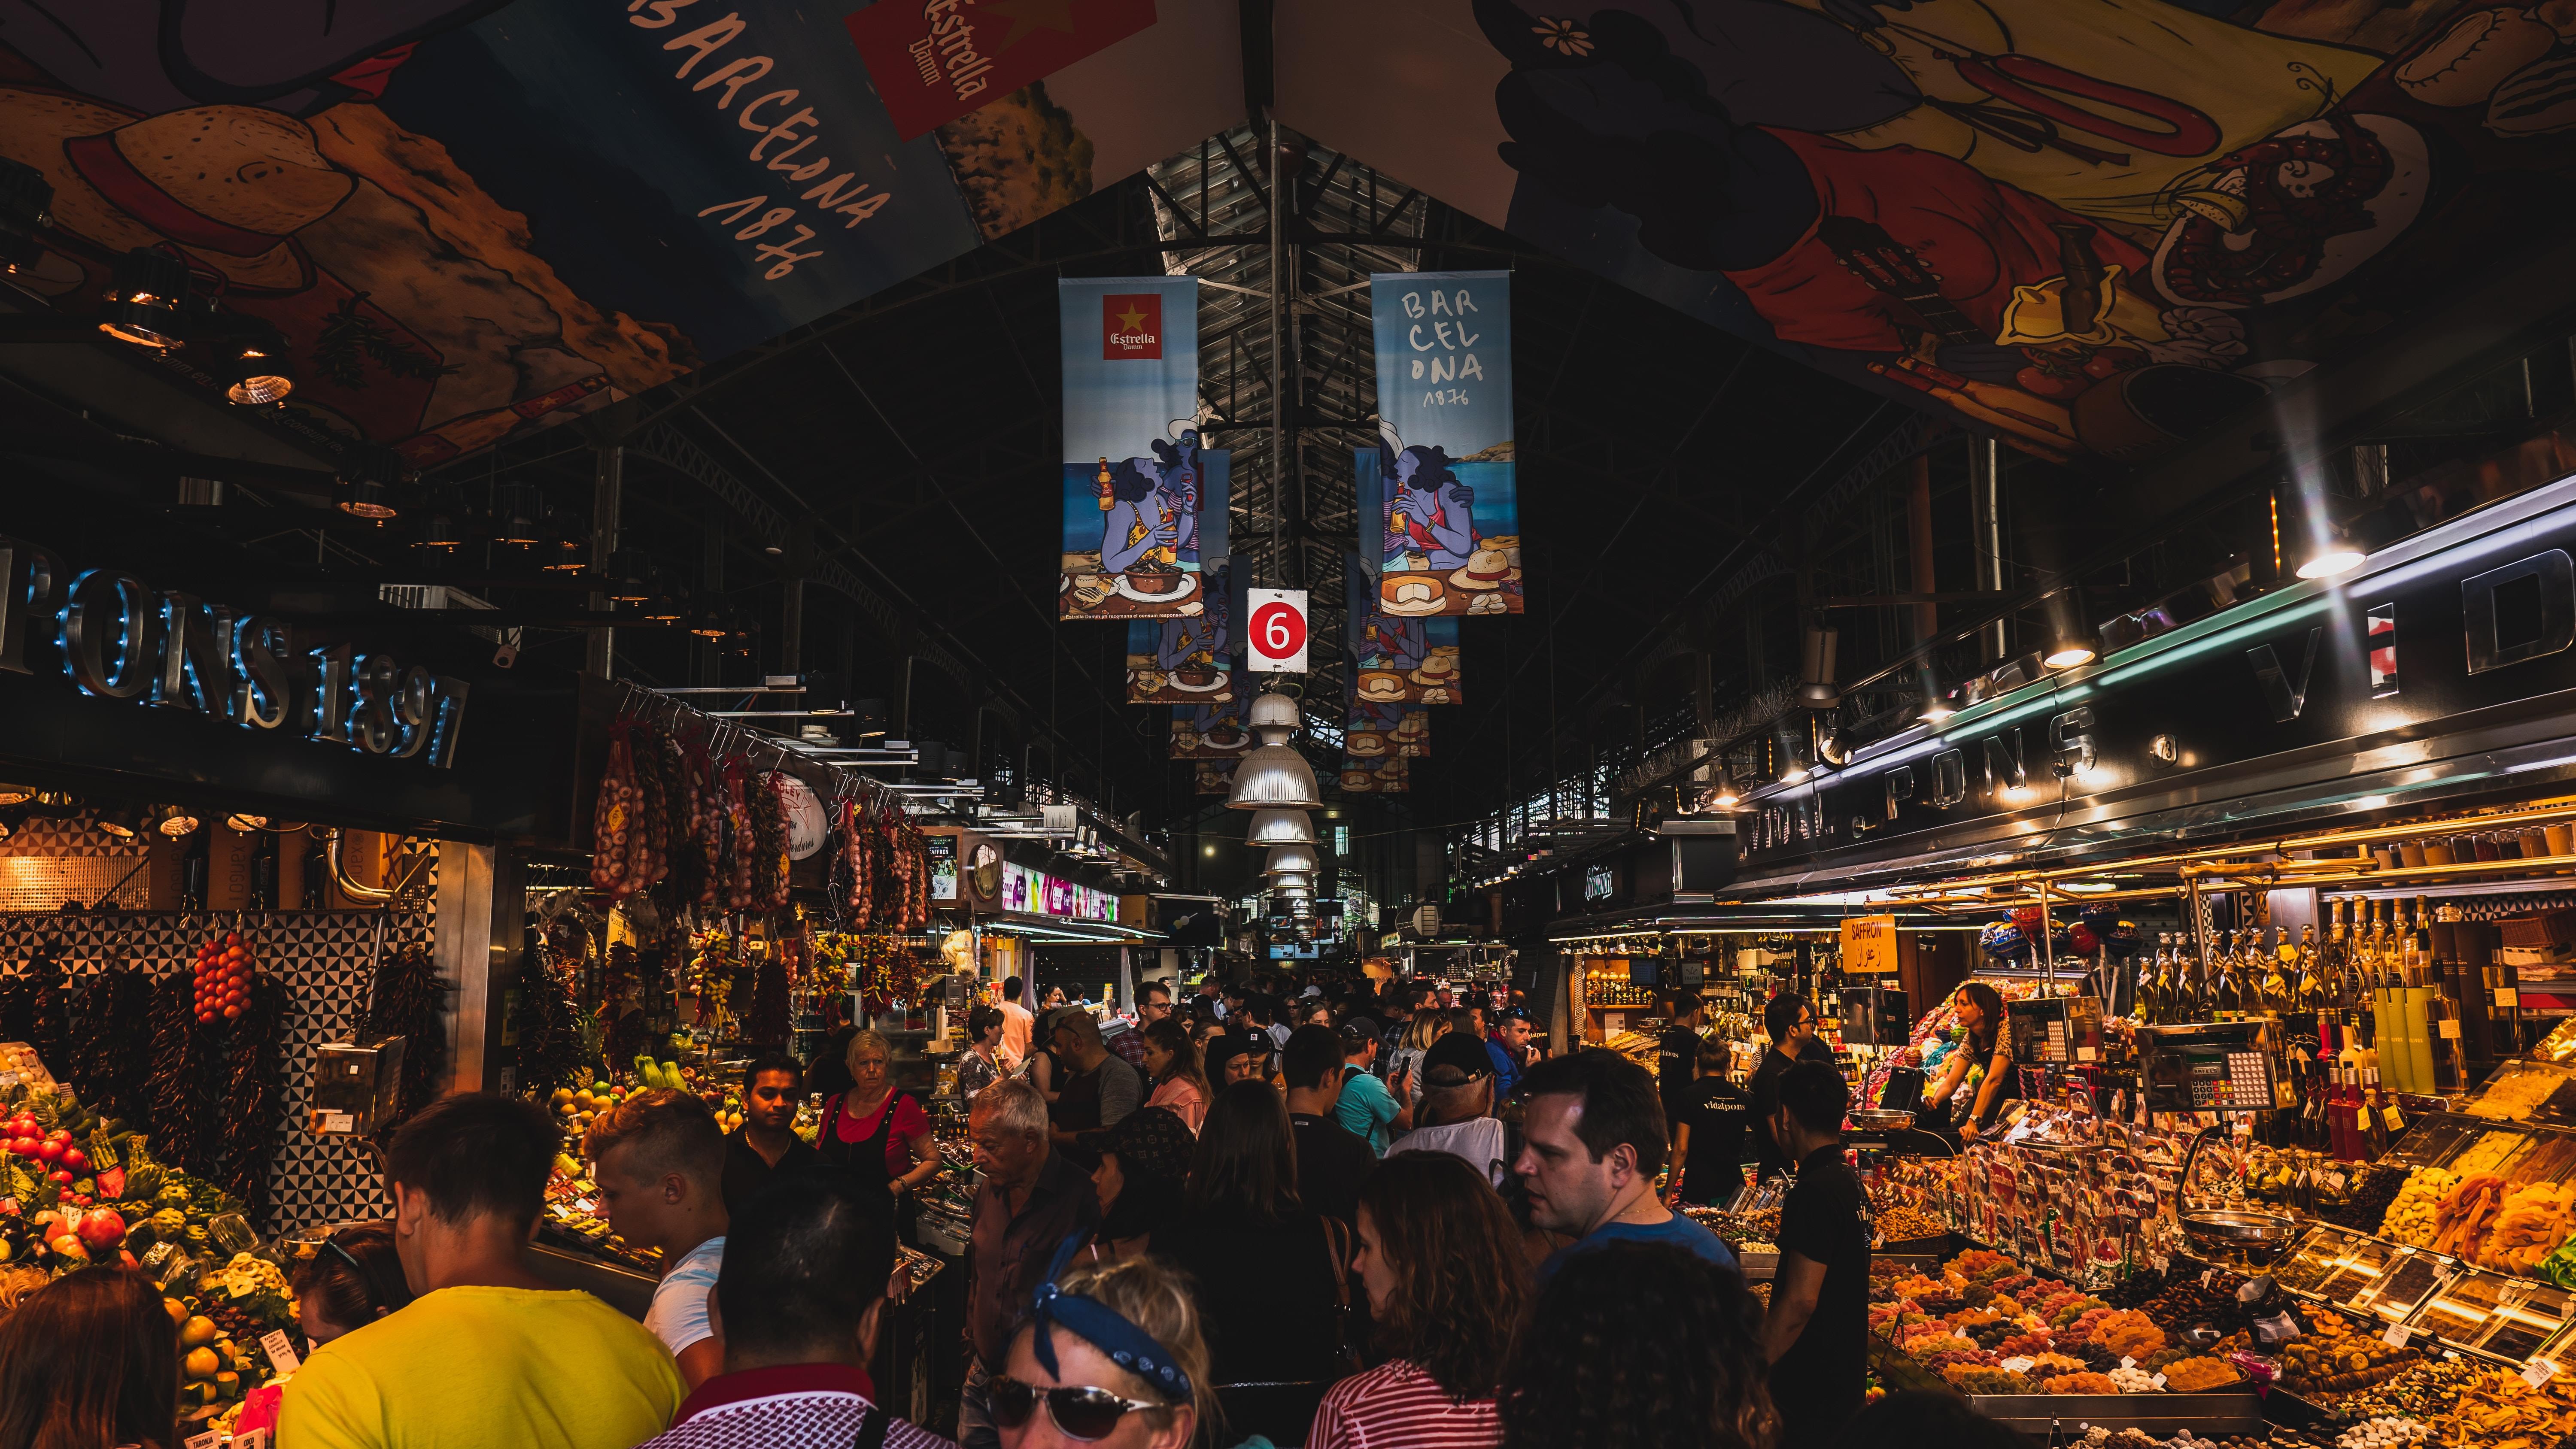 Markets in Barcelona